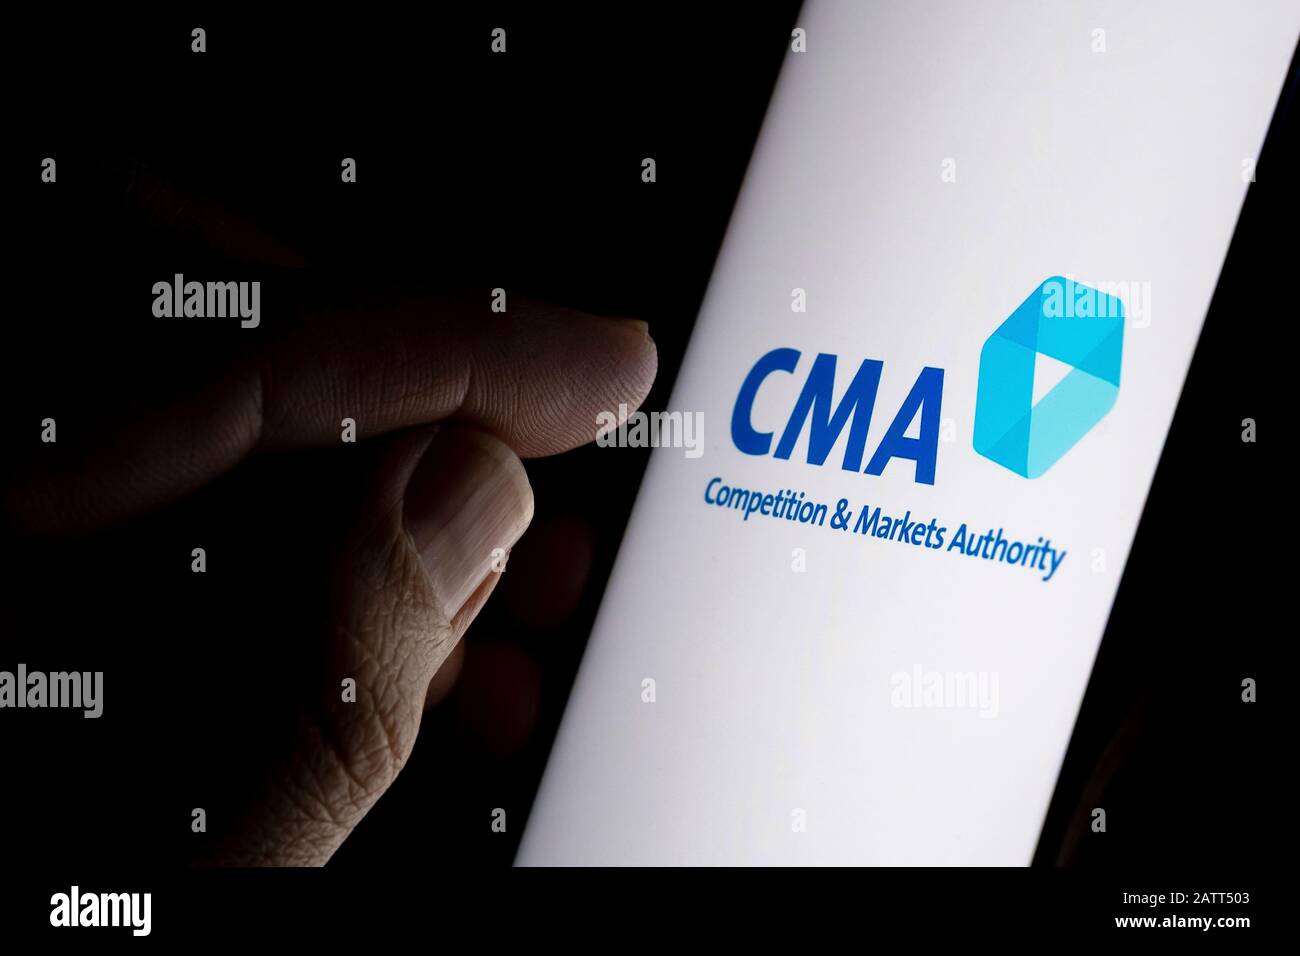 Logo de la concurrence et des marchés sur l'écran et doigt pointant dessus. CMA est un département gouvernemental non ministériel au Royaume-Uni. Banque D'Images